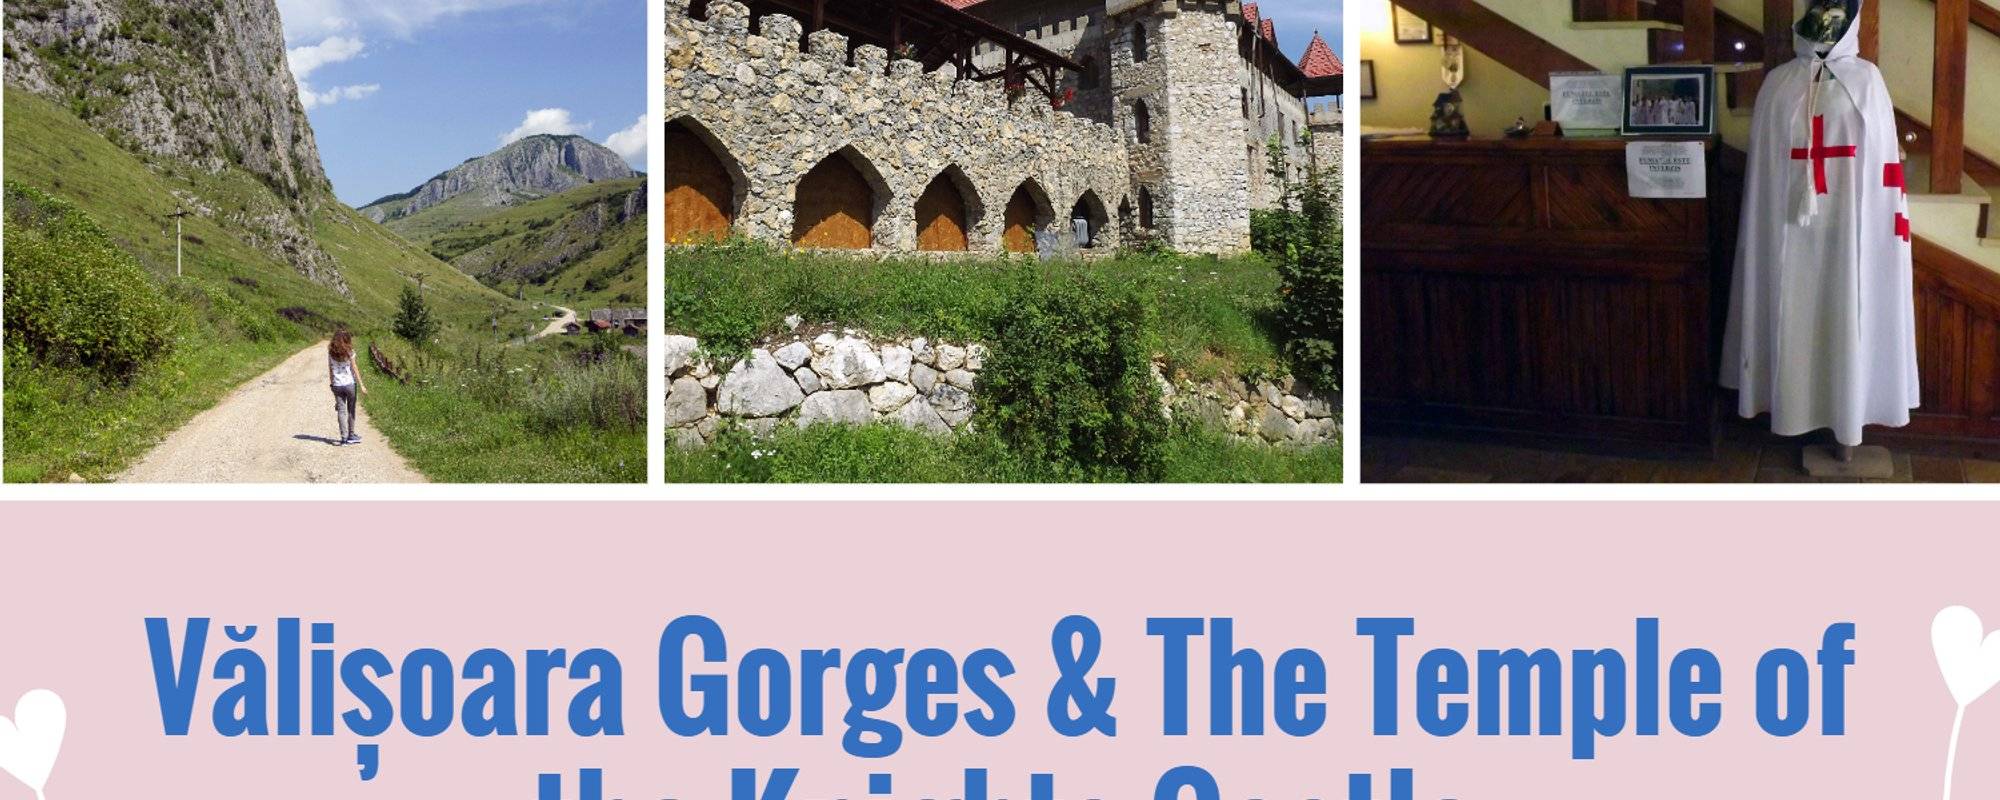 Let's travel together #90 - Cheile Vălișoarei & Castelul Templul Cavalerilor (Vălișoara Gorges & The Temple of the Knights Castle)